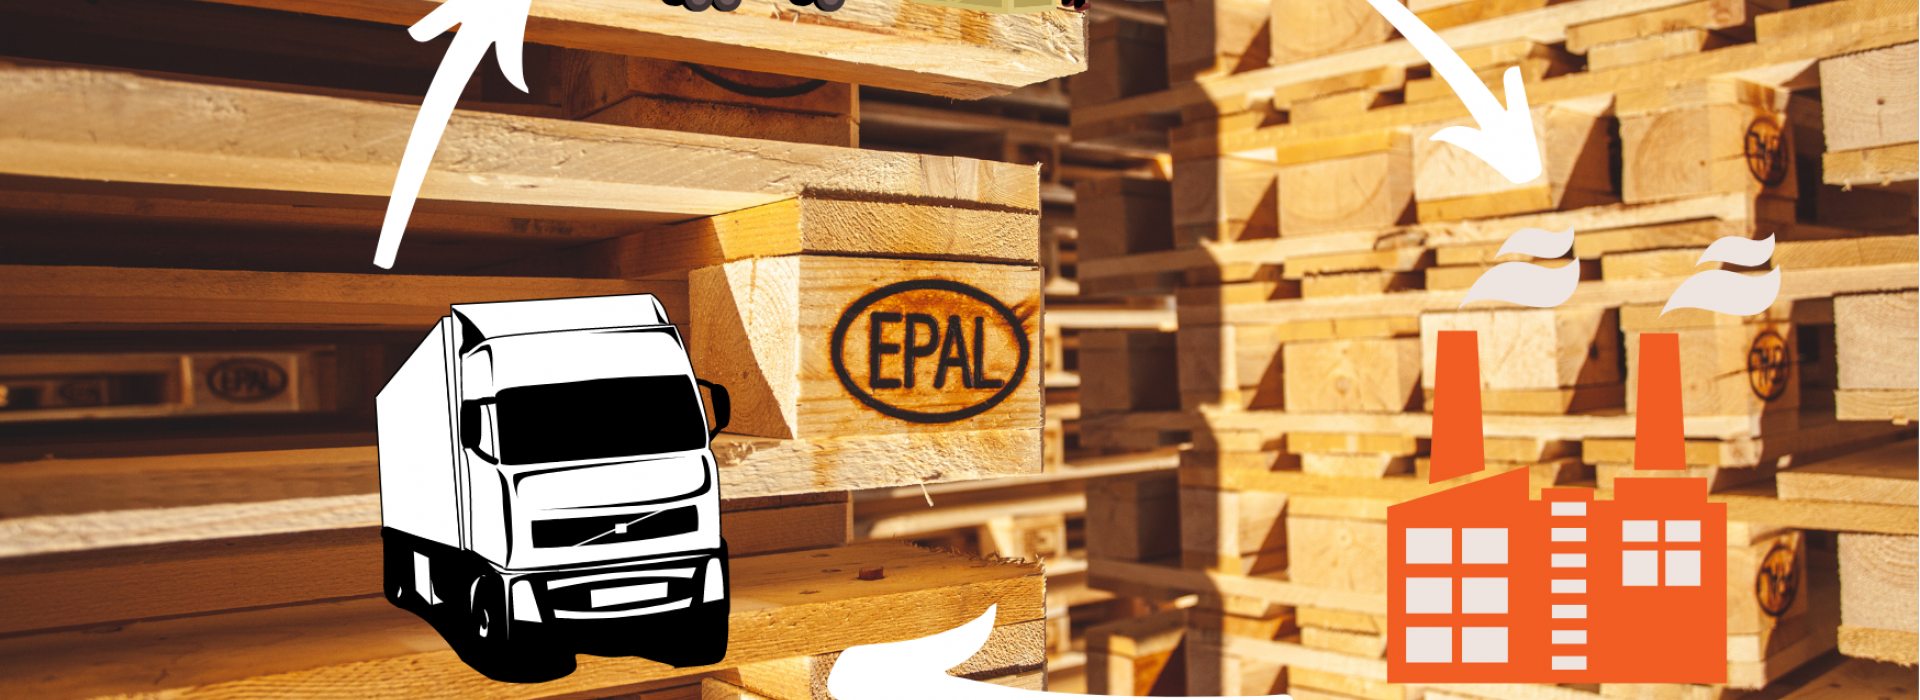 Webinaire dédié aux services logistiques associés à la palette EPAL